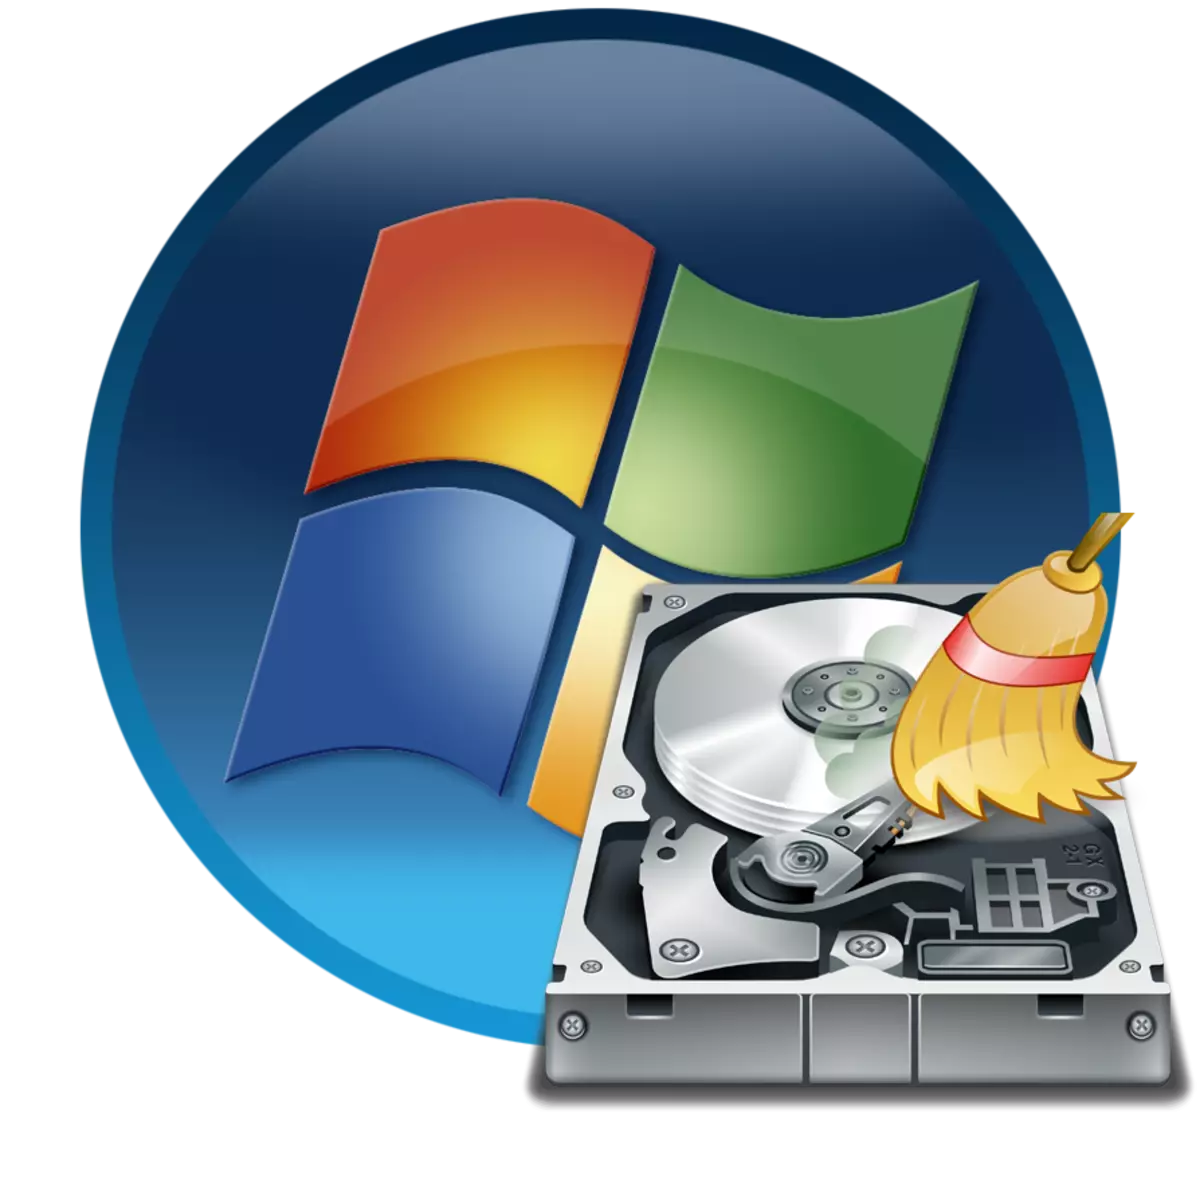 Fòma disk nan Windows 7